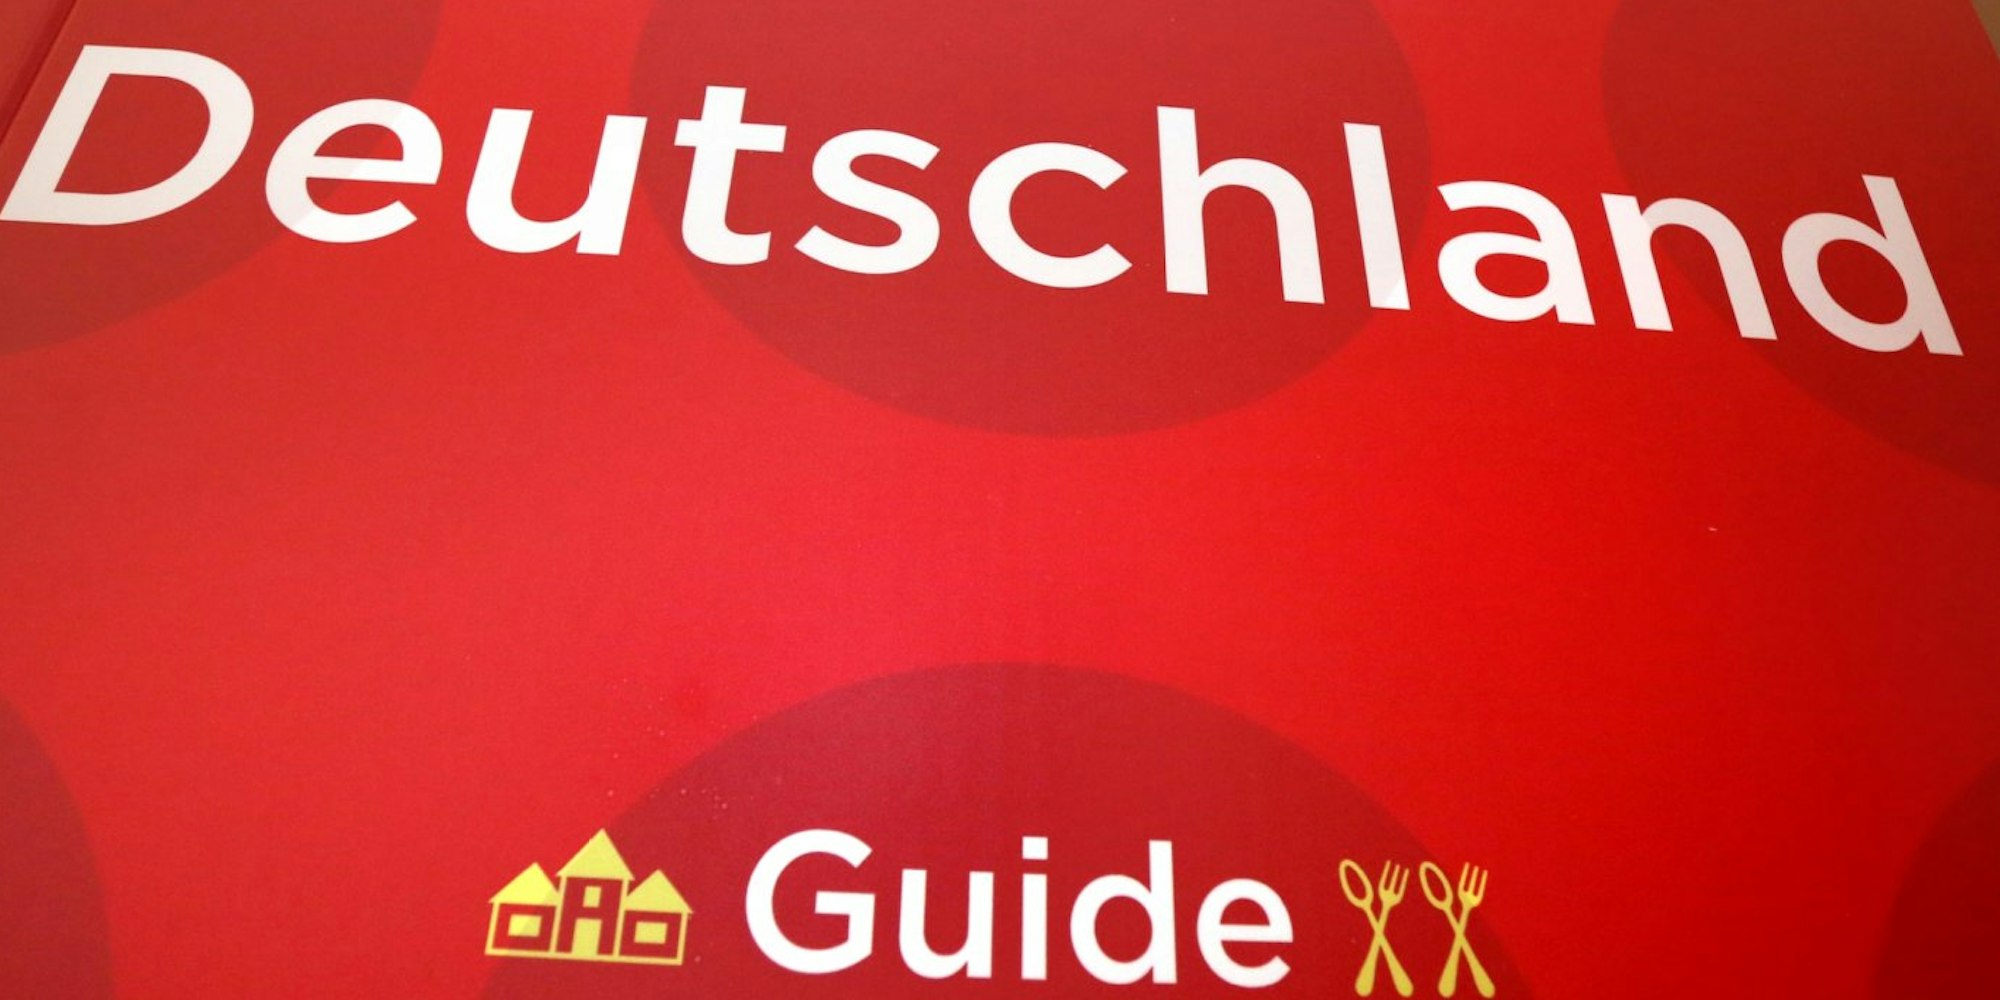 Der Restaurantführer „Guide Michelin“ Deutschland